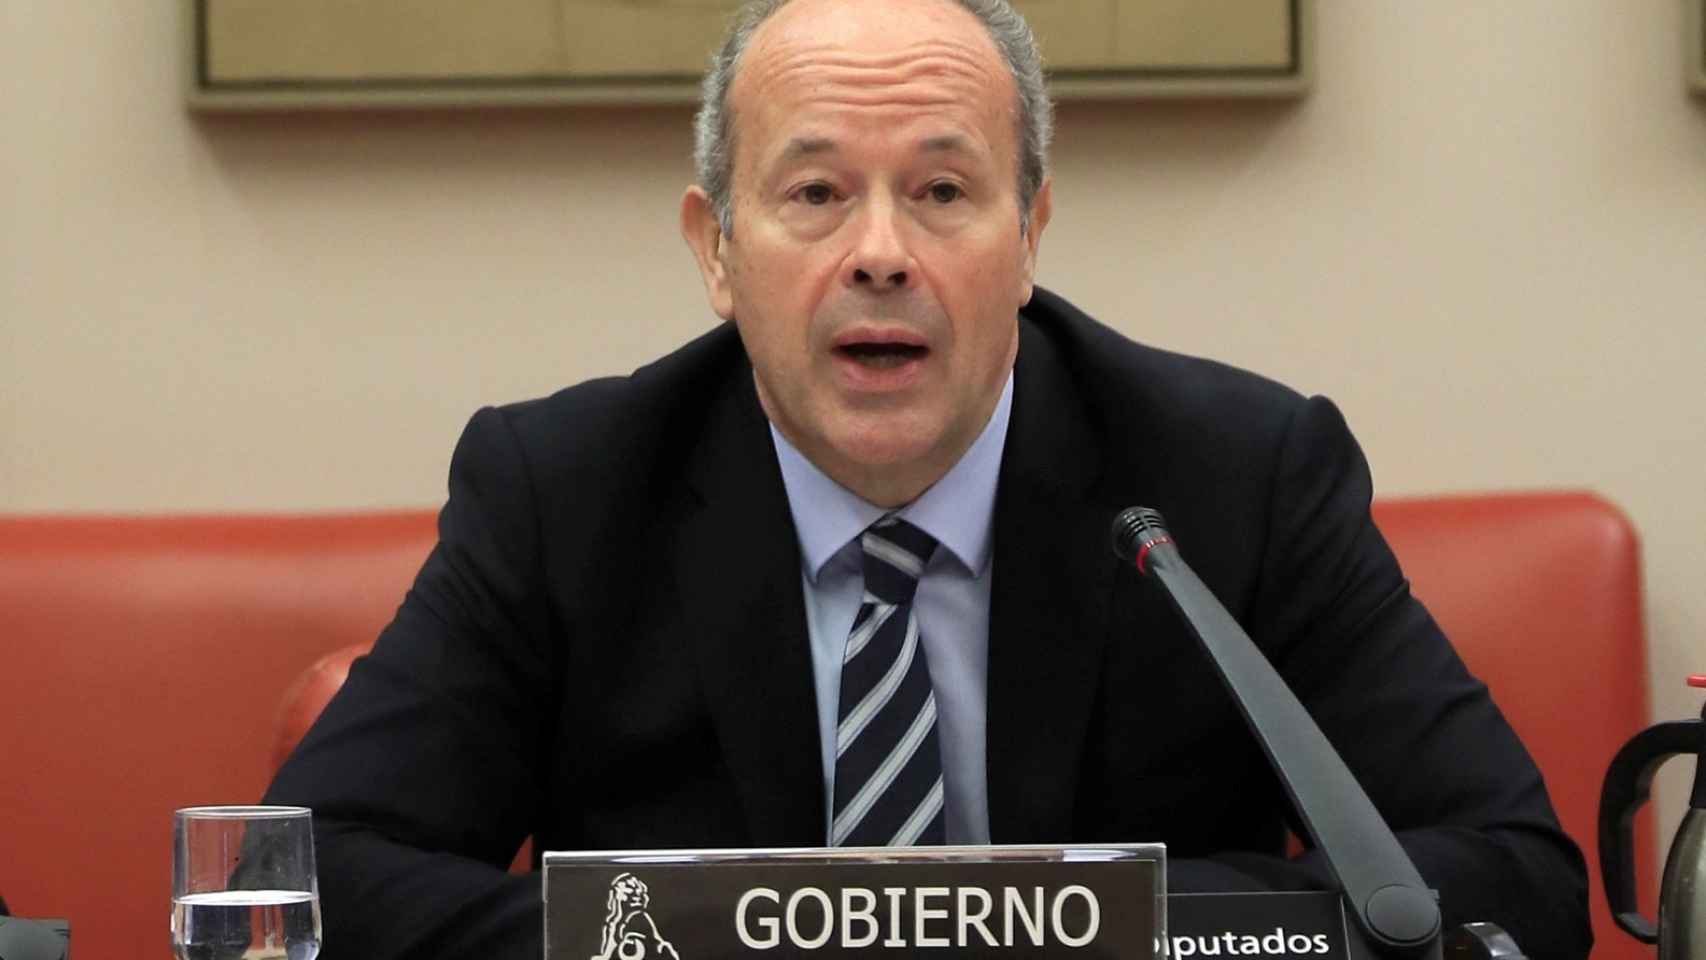 Juan Carlos Campo, ministro de Justicia.